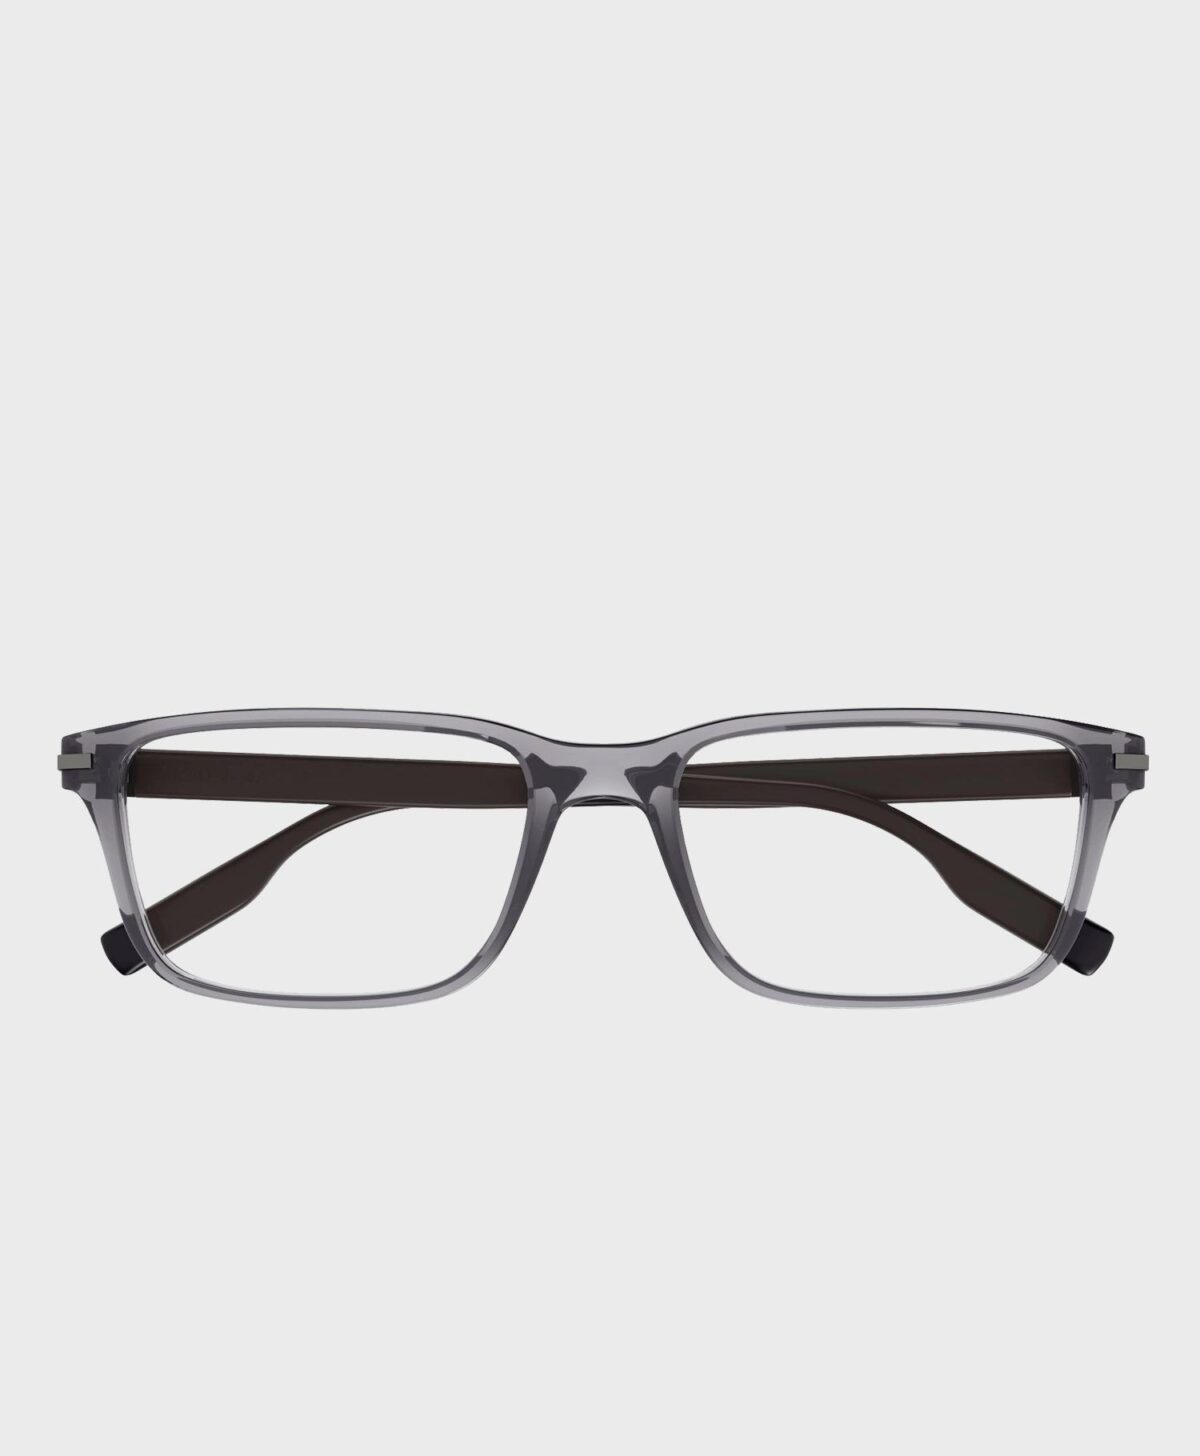 Gọng kính cận Montblanc MB0252O-003 chính hãng / Montblanc Transparent Grey/Brown Eyeglasses for Men